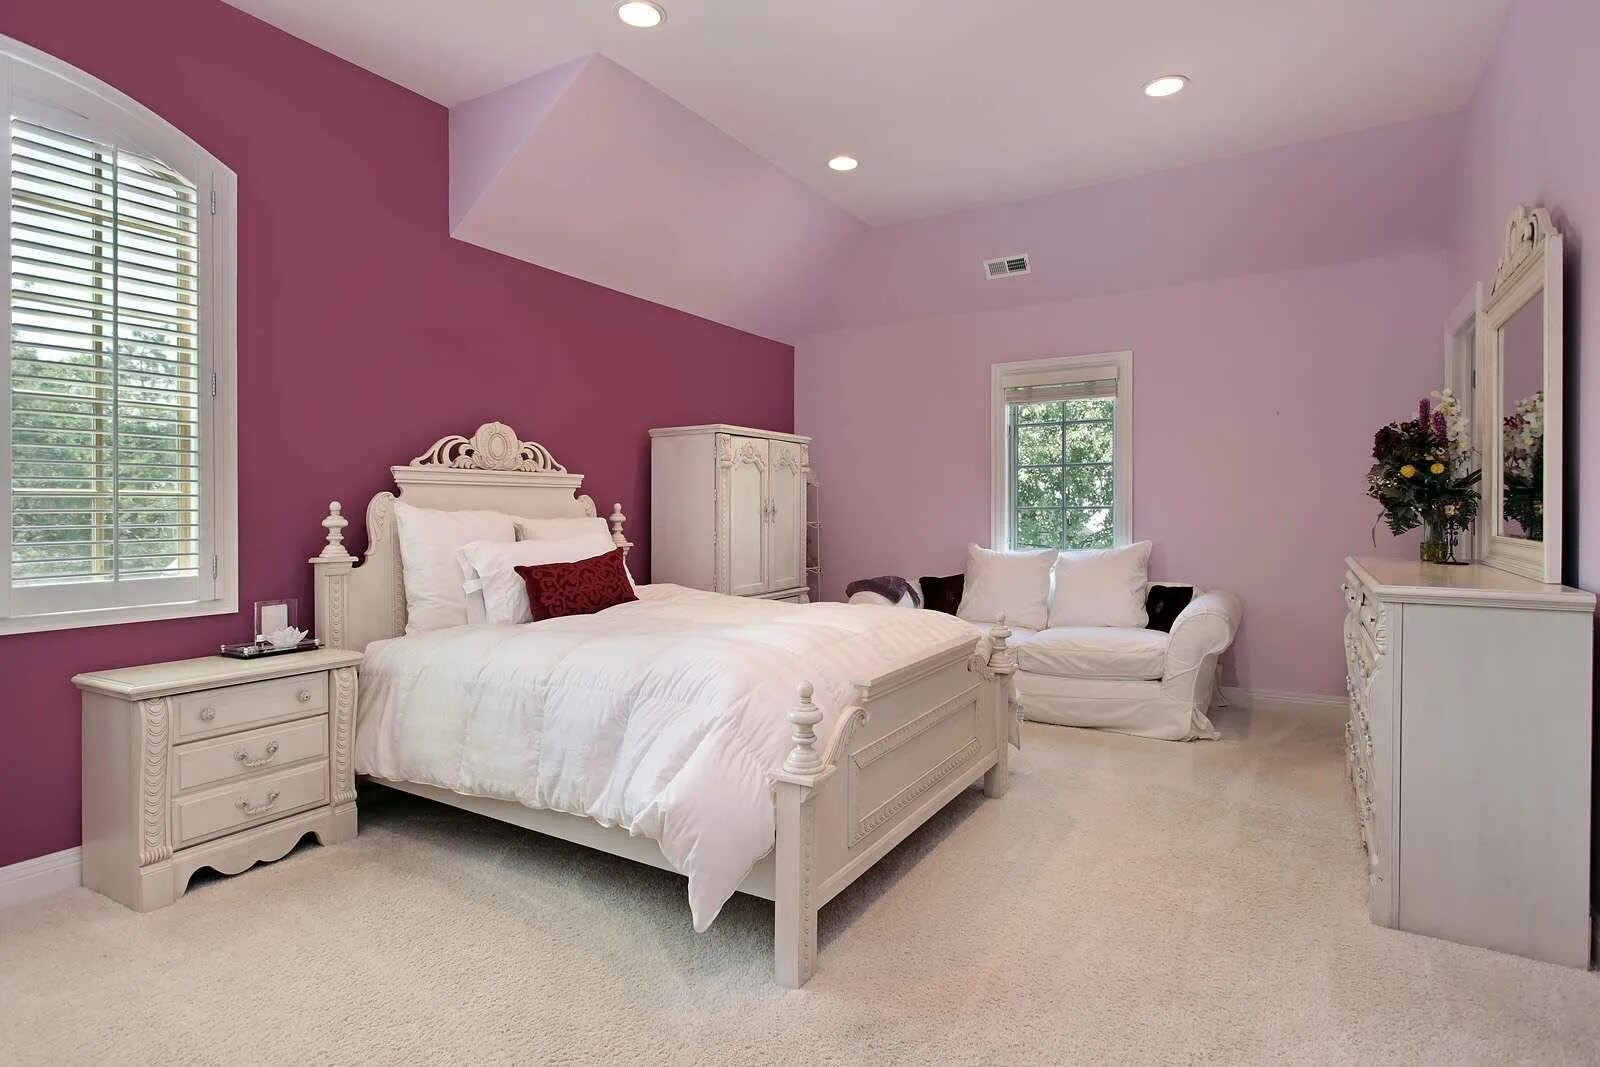 Цвет стен в спальне. Варианты покраски комнаты. Красивый цвет стен. Покрашенные стены в спальне. Краски под обои цвета